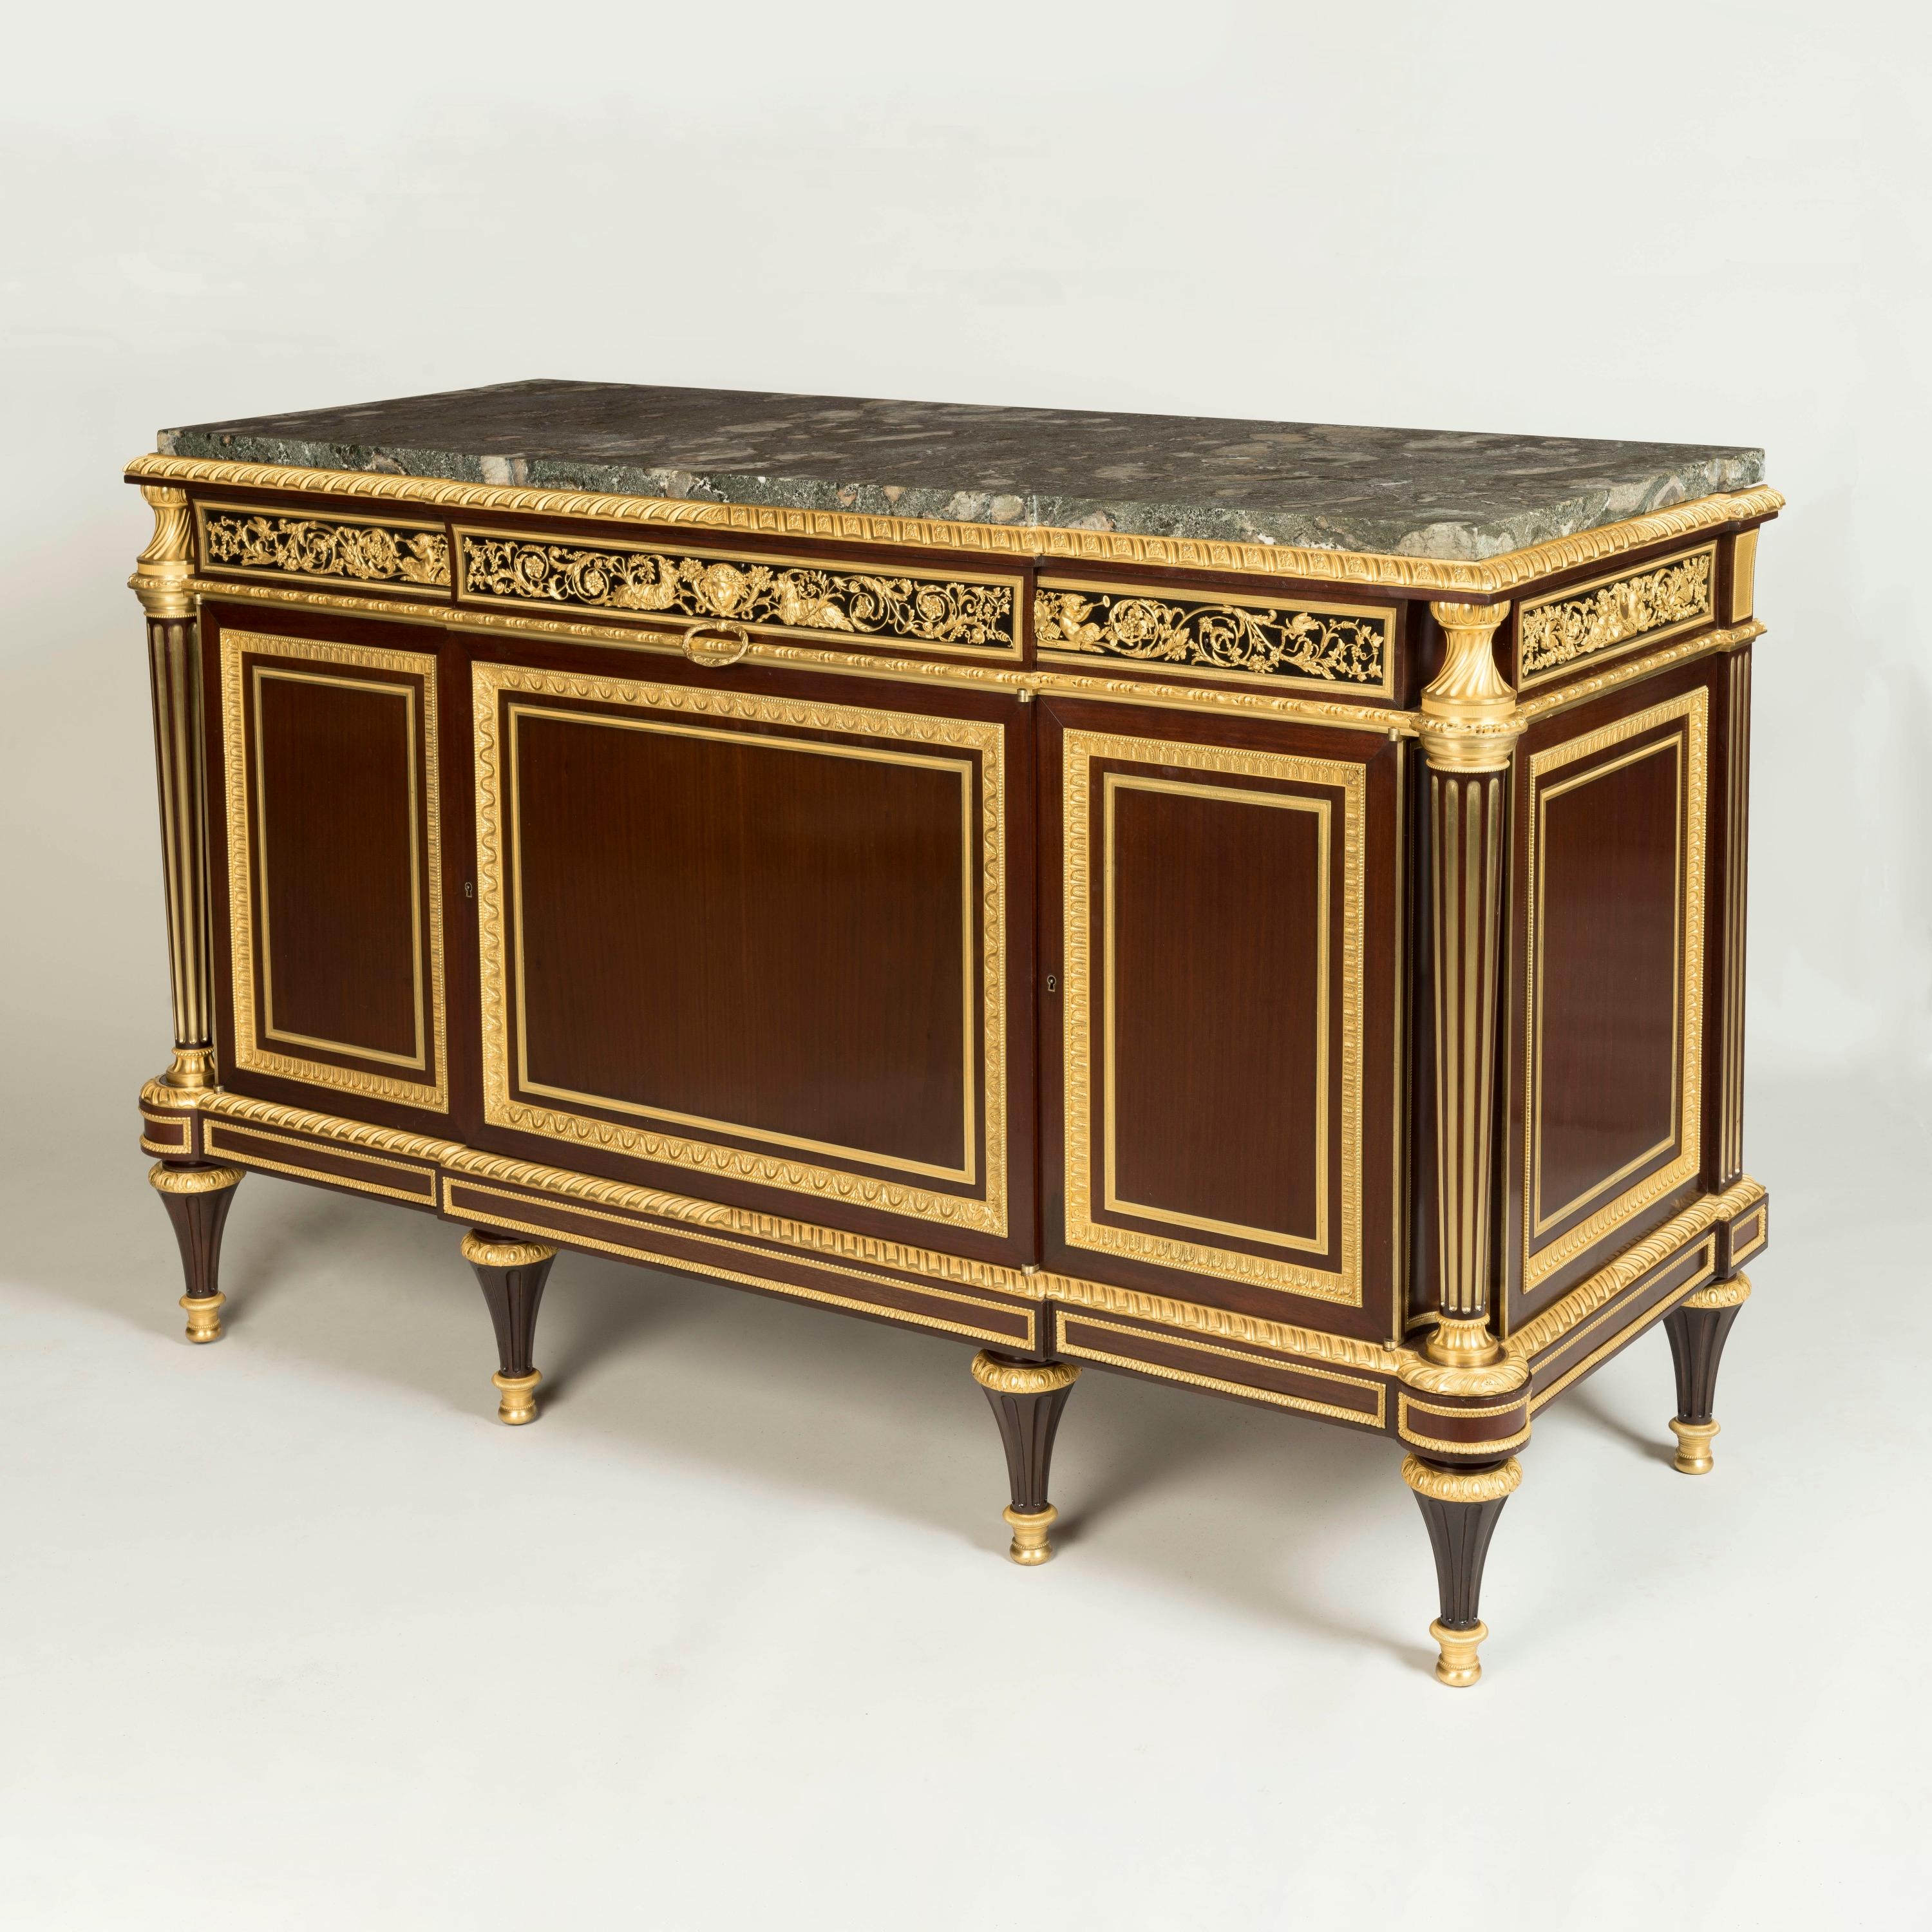 Importante commode de style Louis XVI
par Henry Dasson

Après le Design/One par Adams
Pour le Cabinet du Roi à Saint-Cloud

Construit en acajou et incorporant des montures en bronze doré bien moulées et ciselées, le meuble latéral à façade brisée